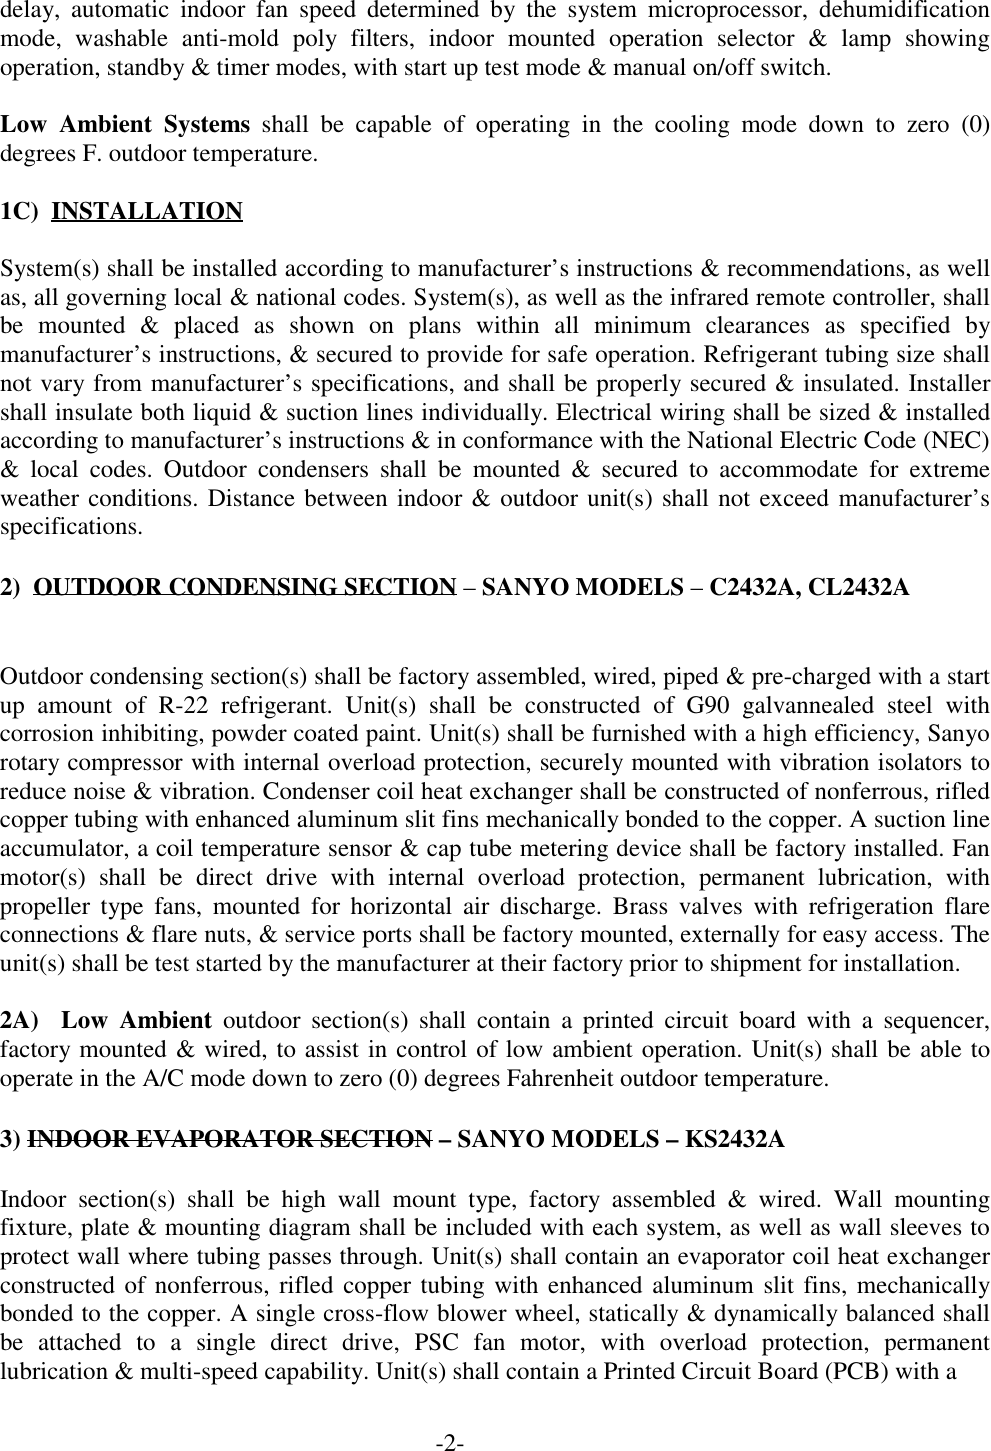 Page 2 of 3 - Sanyo Sanyo-24Kls32A-Users-Manual- AIR CONDITIONING PRODUCTS  Sanyo-24kls32a-users-manual